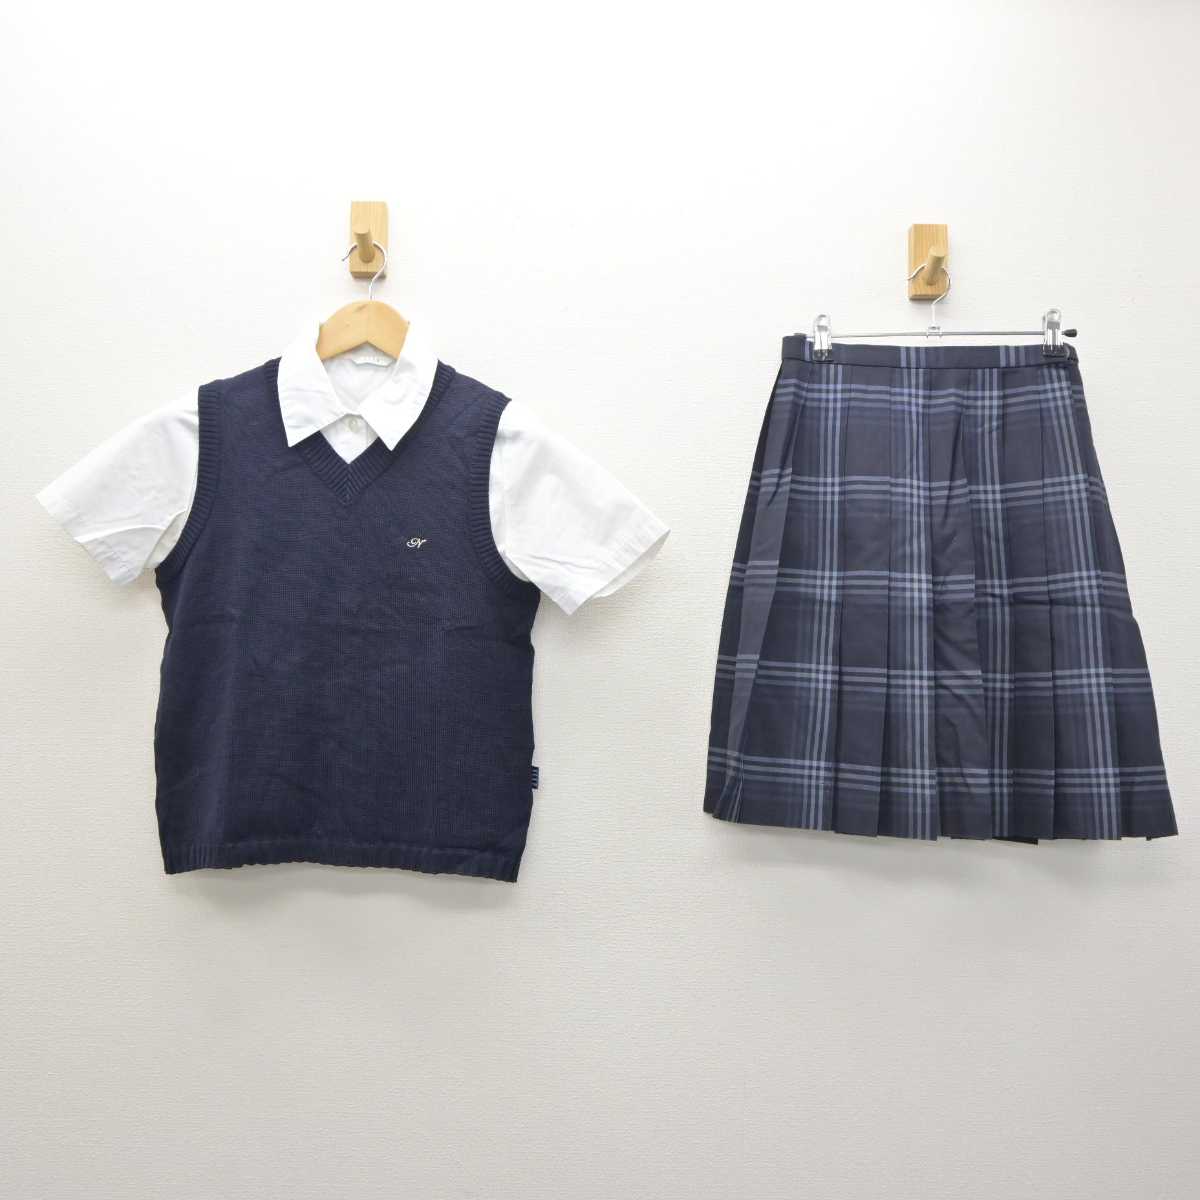 大幅割引福岡県 中村学園女子高等学校 女子制服 4点 sf000947 学生服